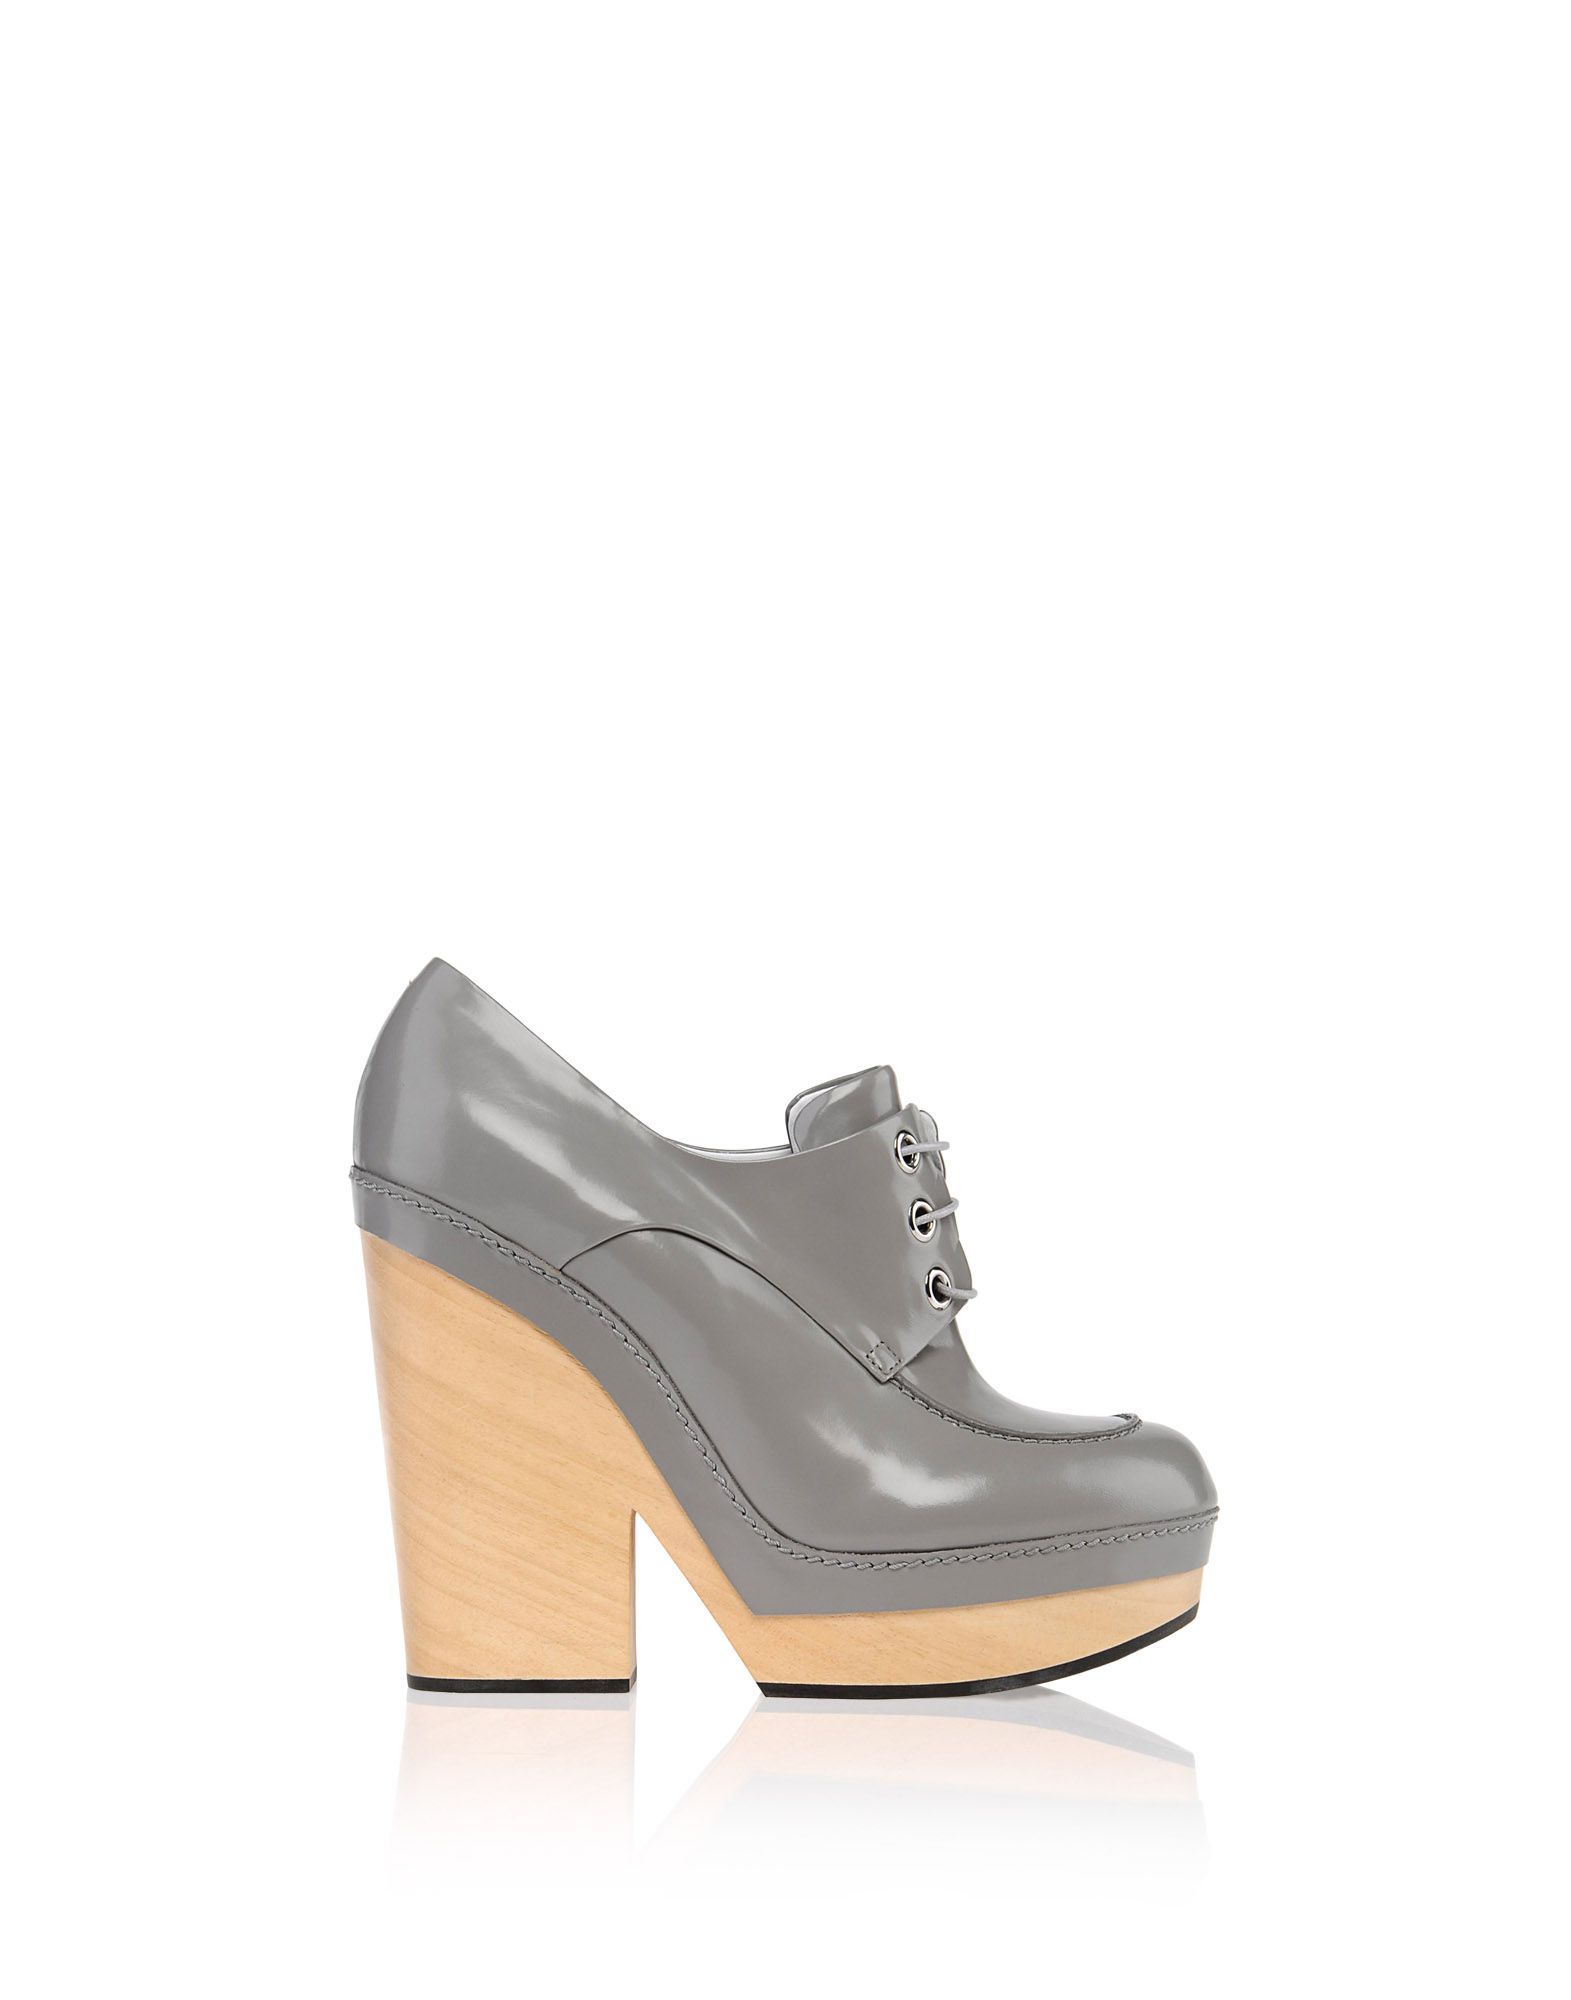 Lace up Women - Shoes Women on Jil Sander Online Store